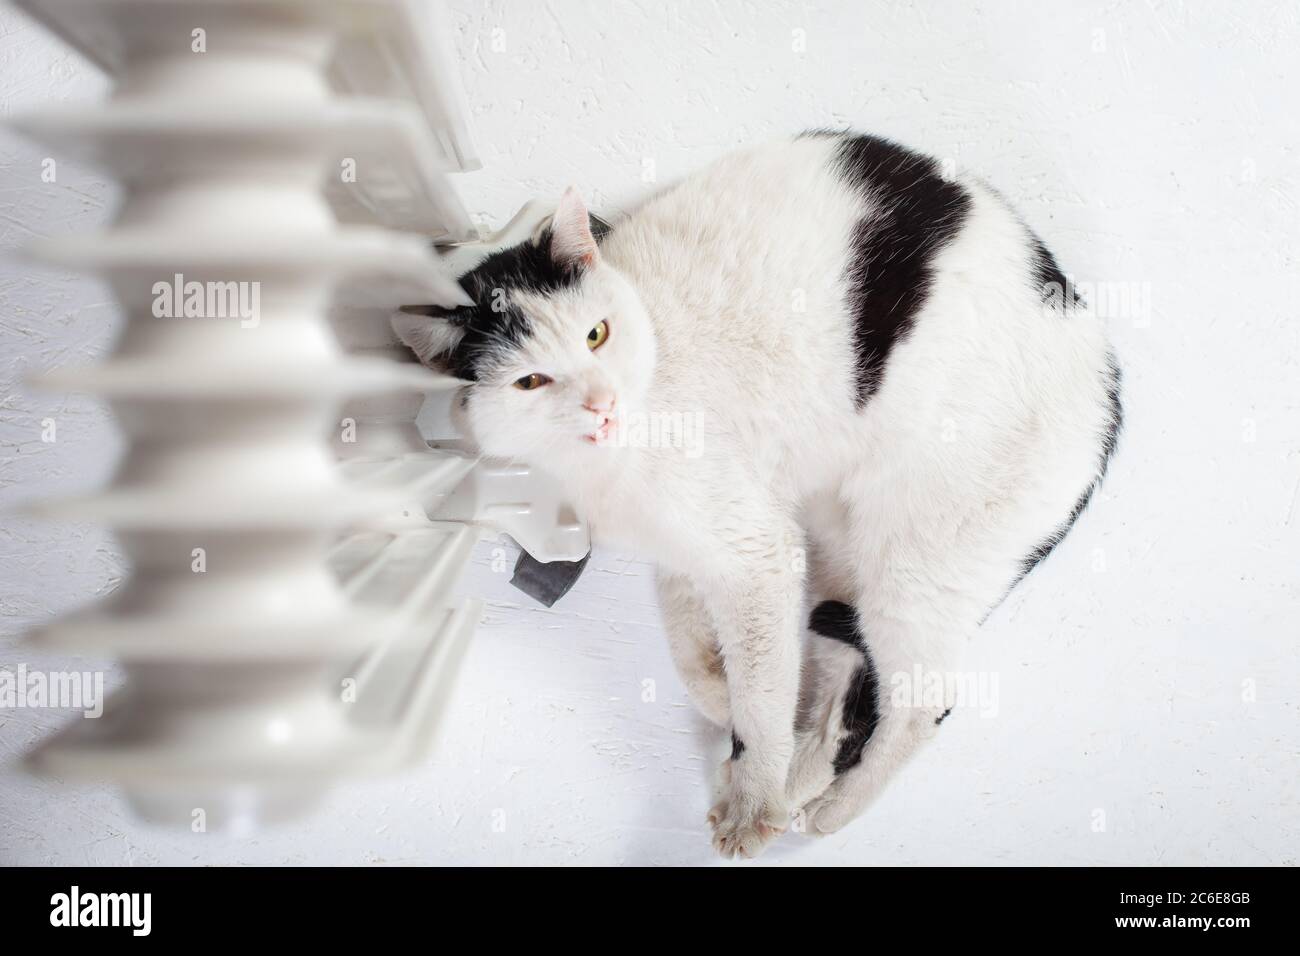 Le chat chauffe près de la batterie, un chauffage mobile, le chat a gelé,  un chat mignon. Le chat se trouve au niveau du chauffage Photo Stock - Alamy